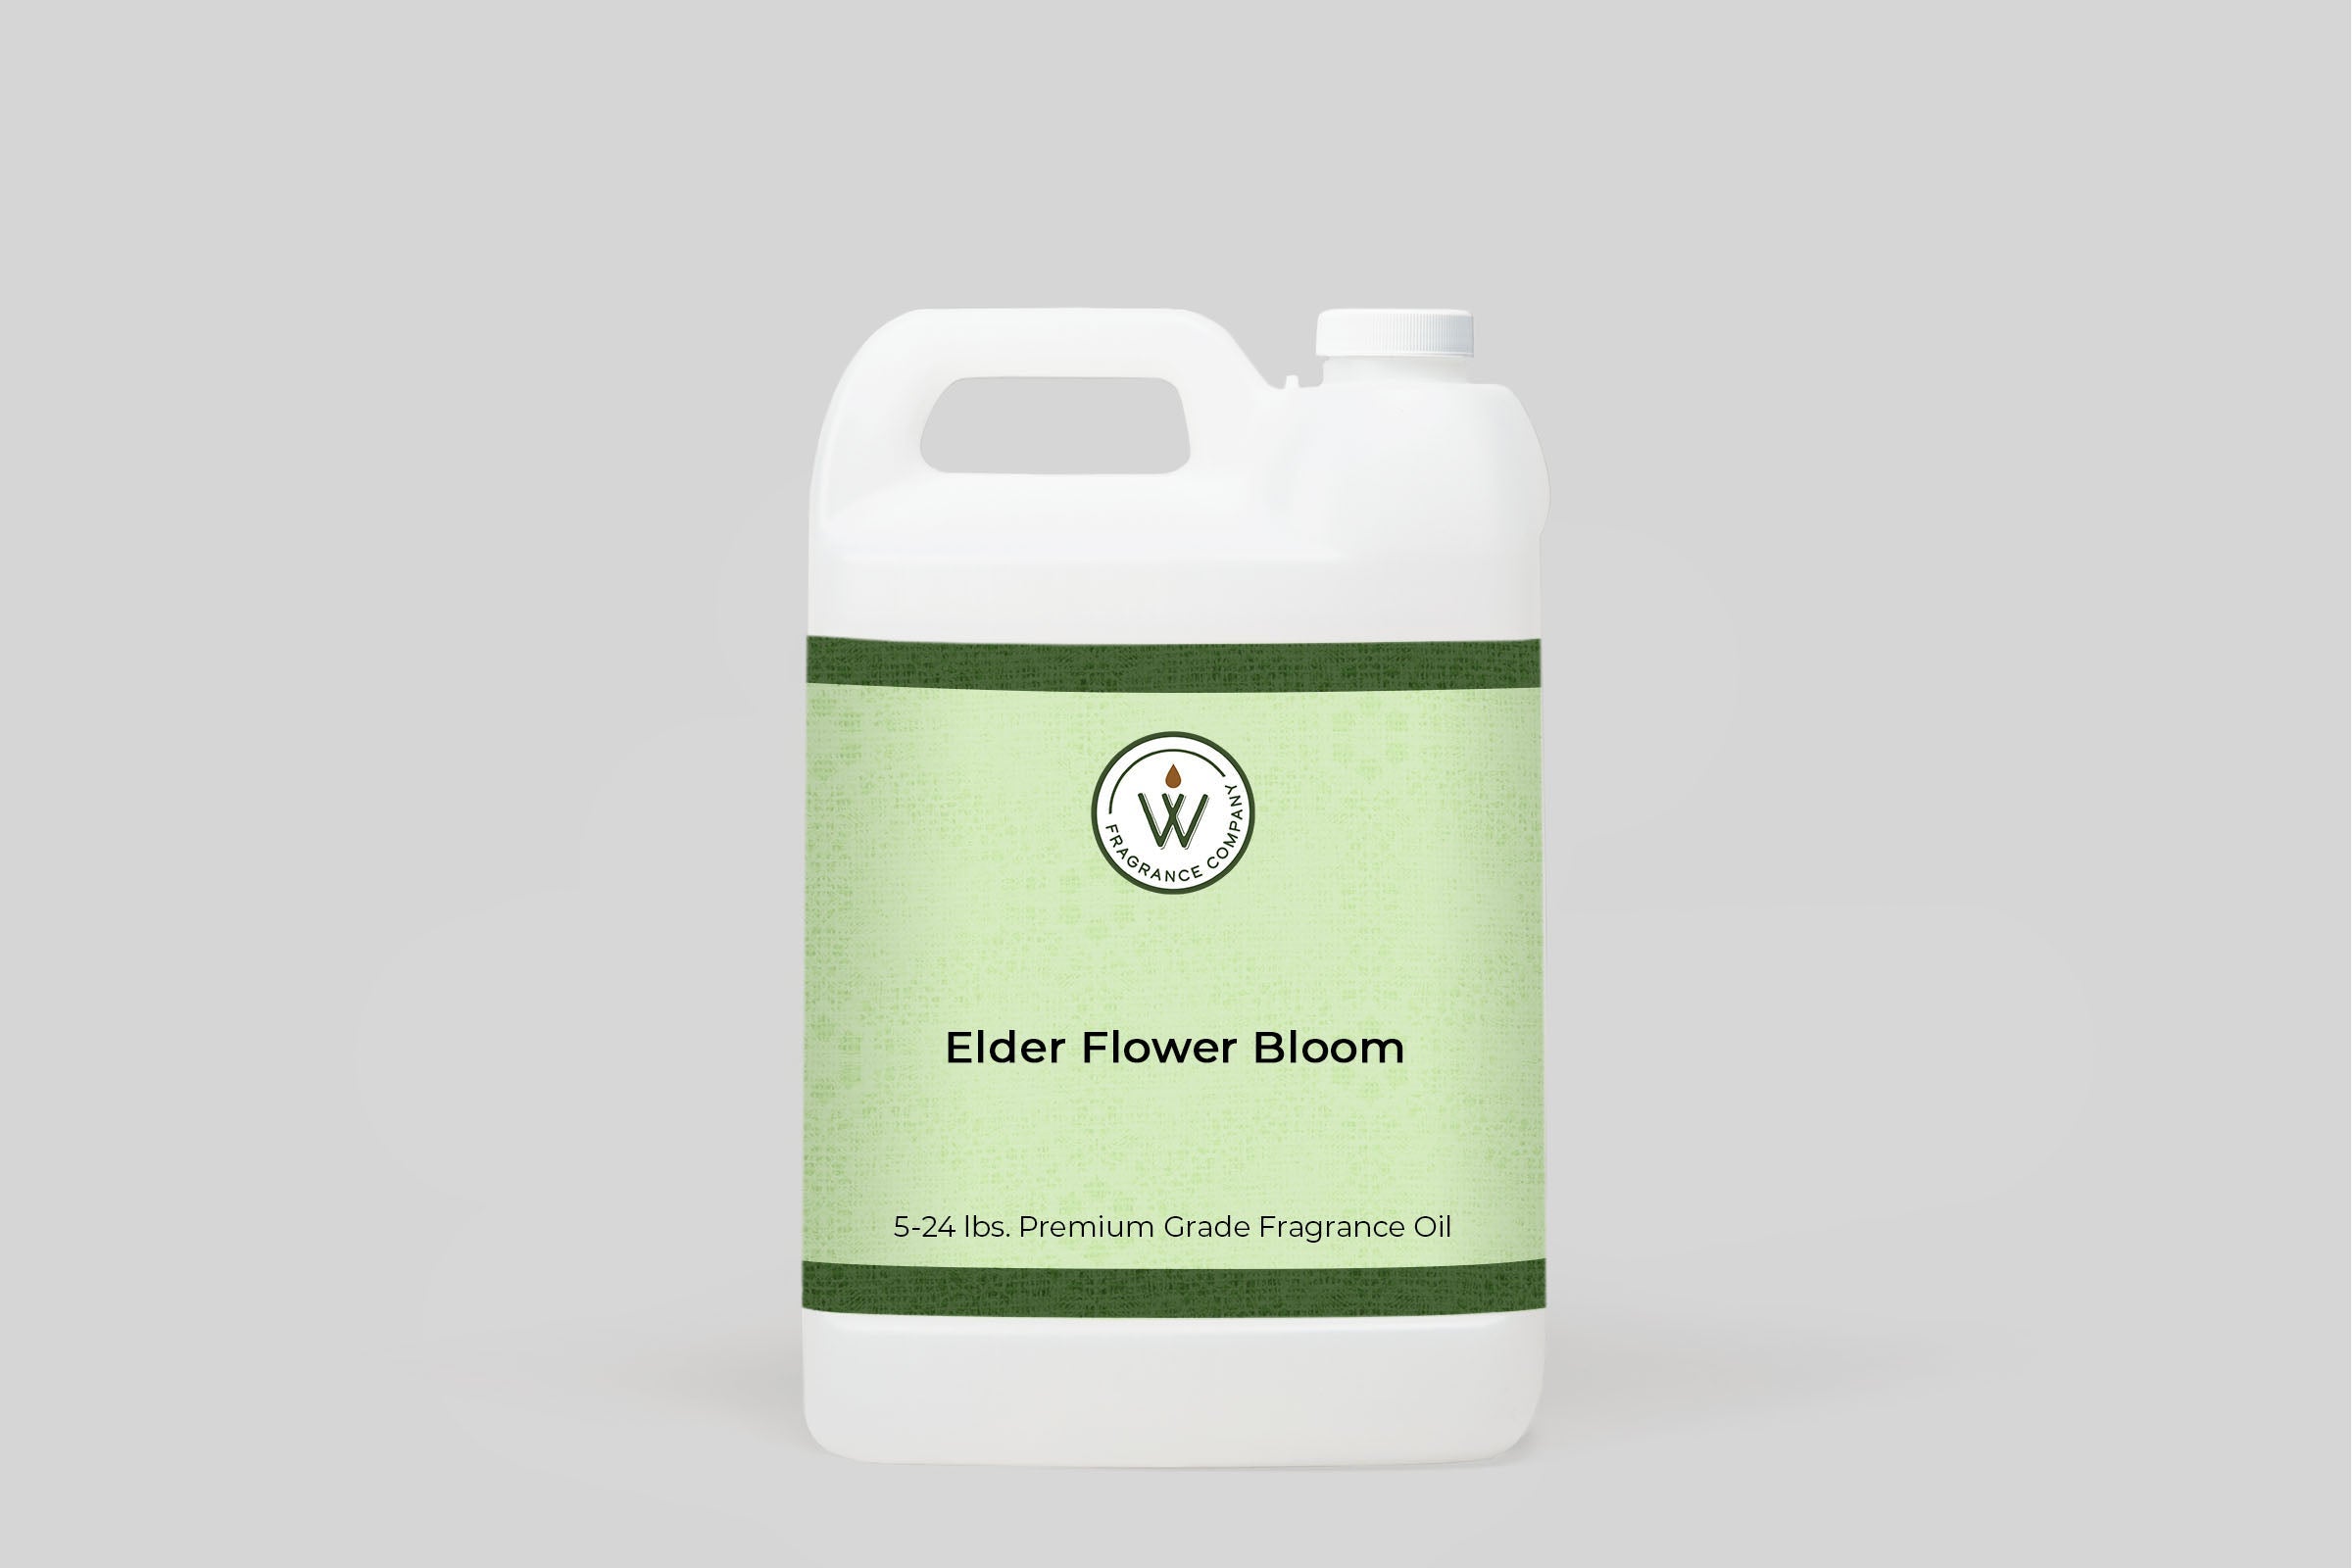 Elder Flower Bloom Fragrance Oil